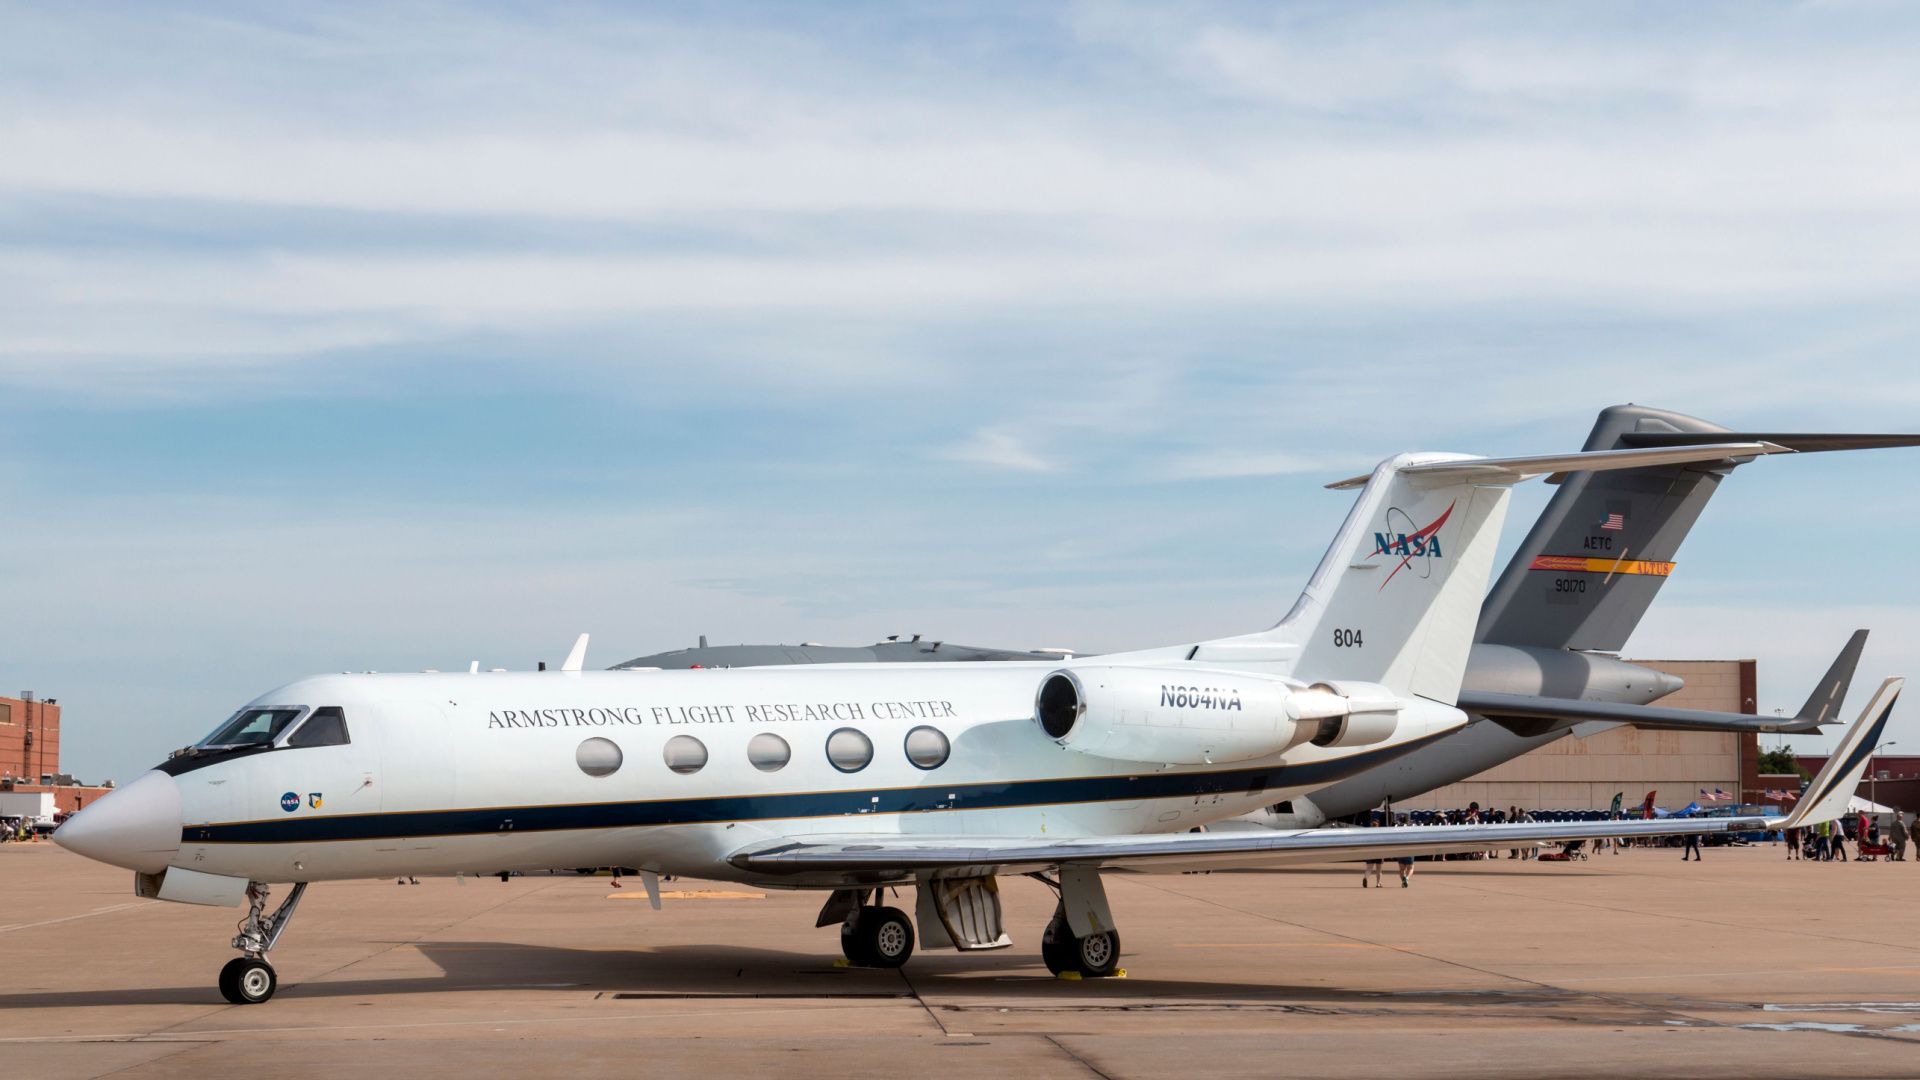 NASA Gulfstream jet